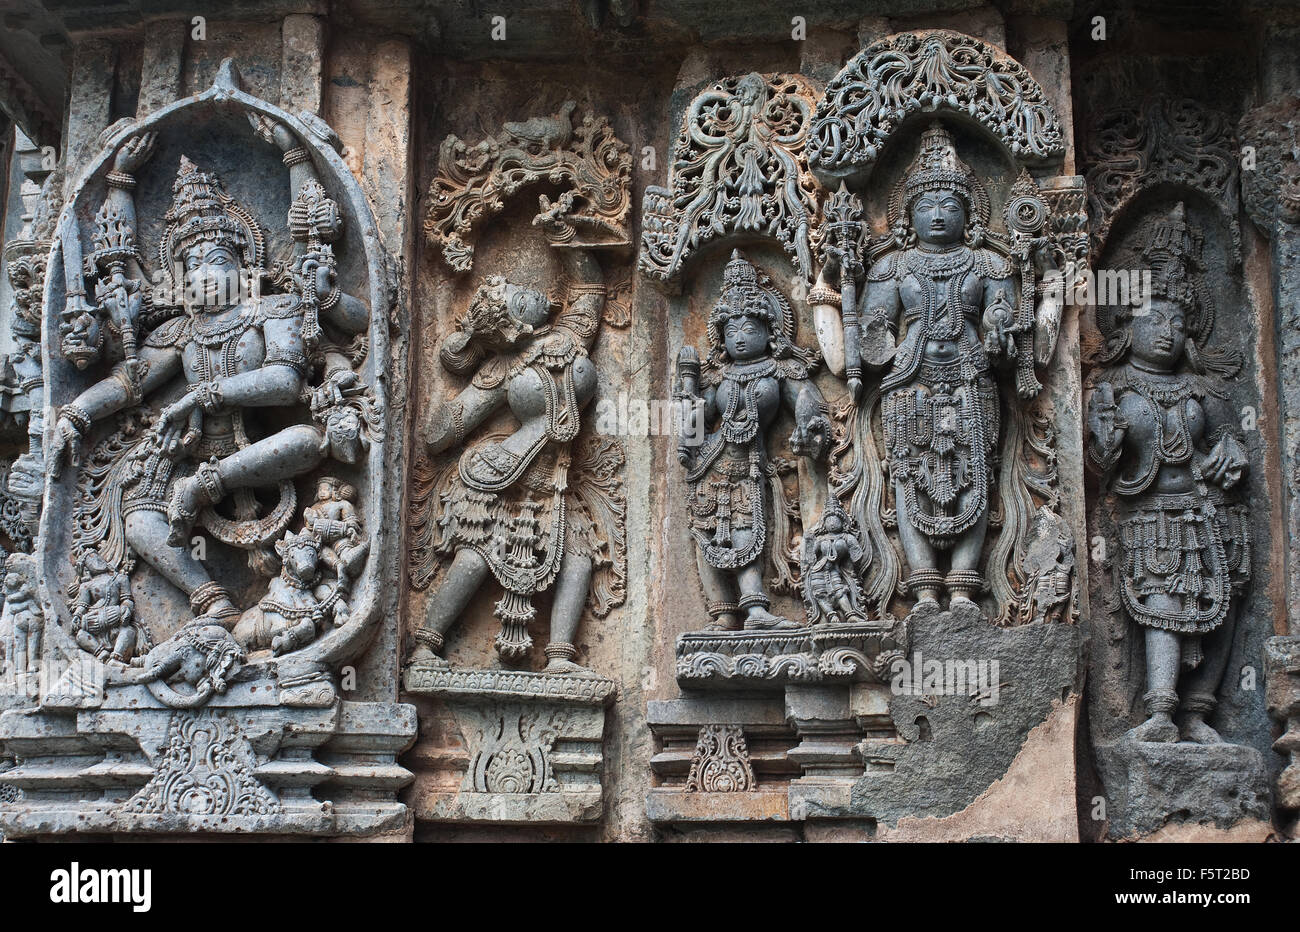 Sculptures datant de la dynastie Hoysala ( 12° siècle) dans le temple Hoysaleswara (Inde) Banque D'Images